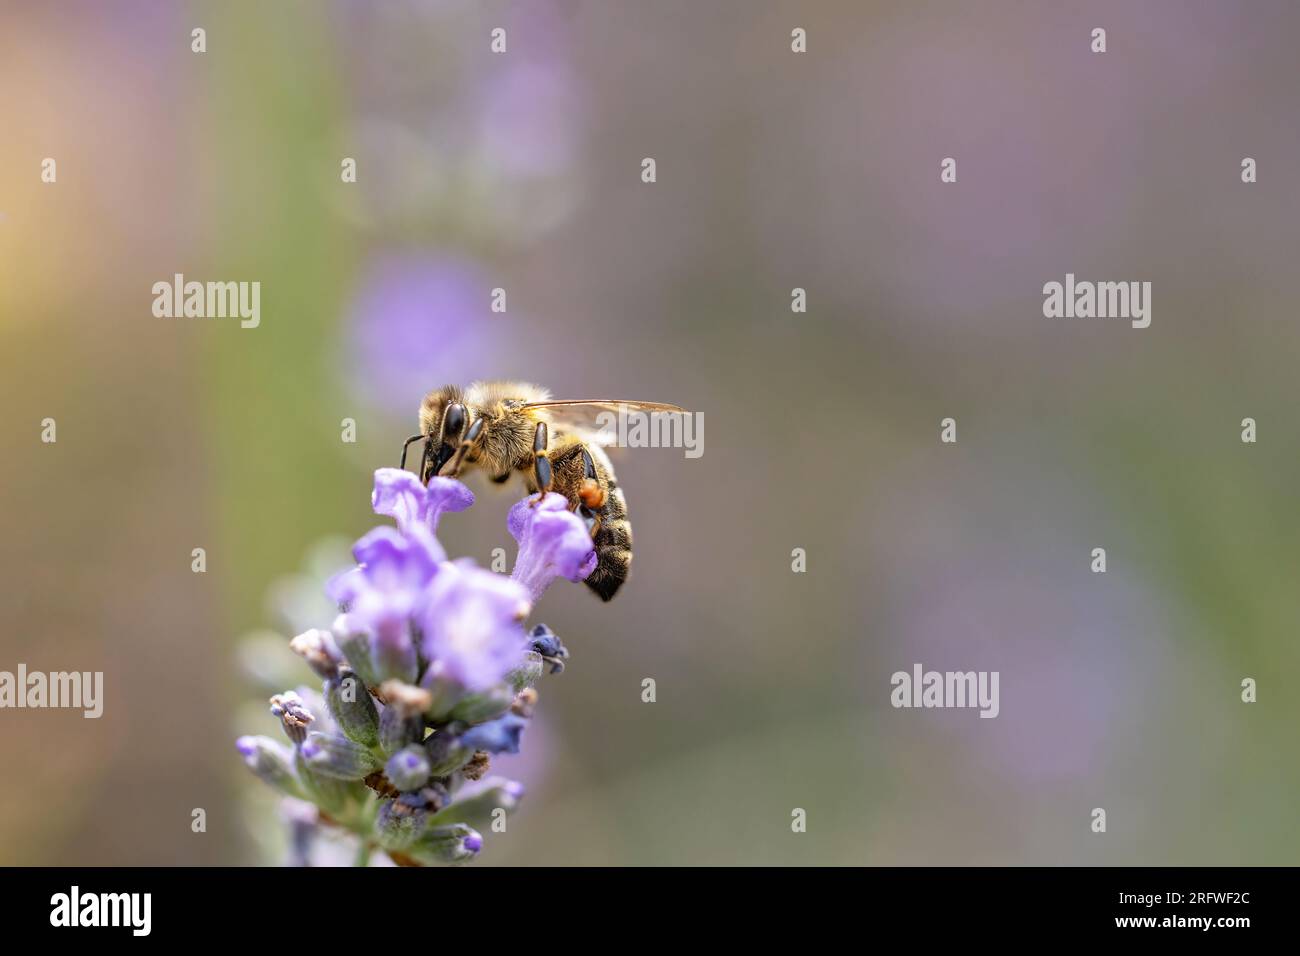 Vue latérale de la fleur de lavande violette pollinisante d'abeille de miel. Horizontalement. Banque D'Images